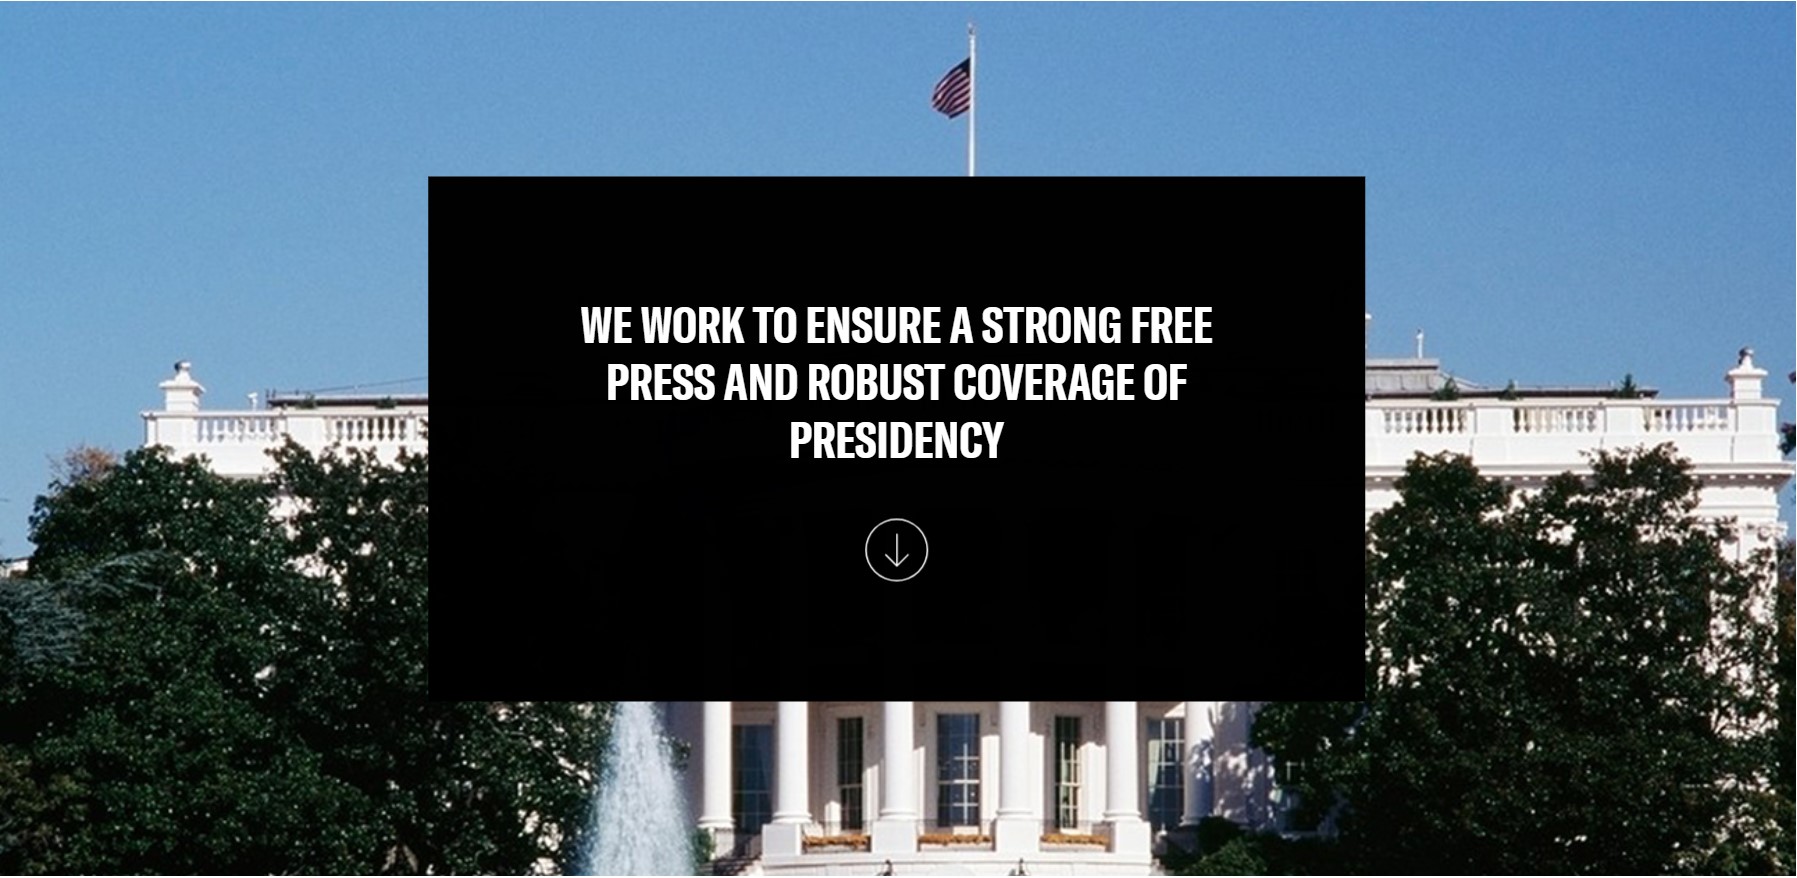 백악관 출입기자단 홈페이지 WHCA  : “기자단은 대통령과 관련된 강력한 언론 자유와 확고한 취재를 보장하기 위해 일한다”고 쓰여있다